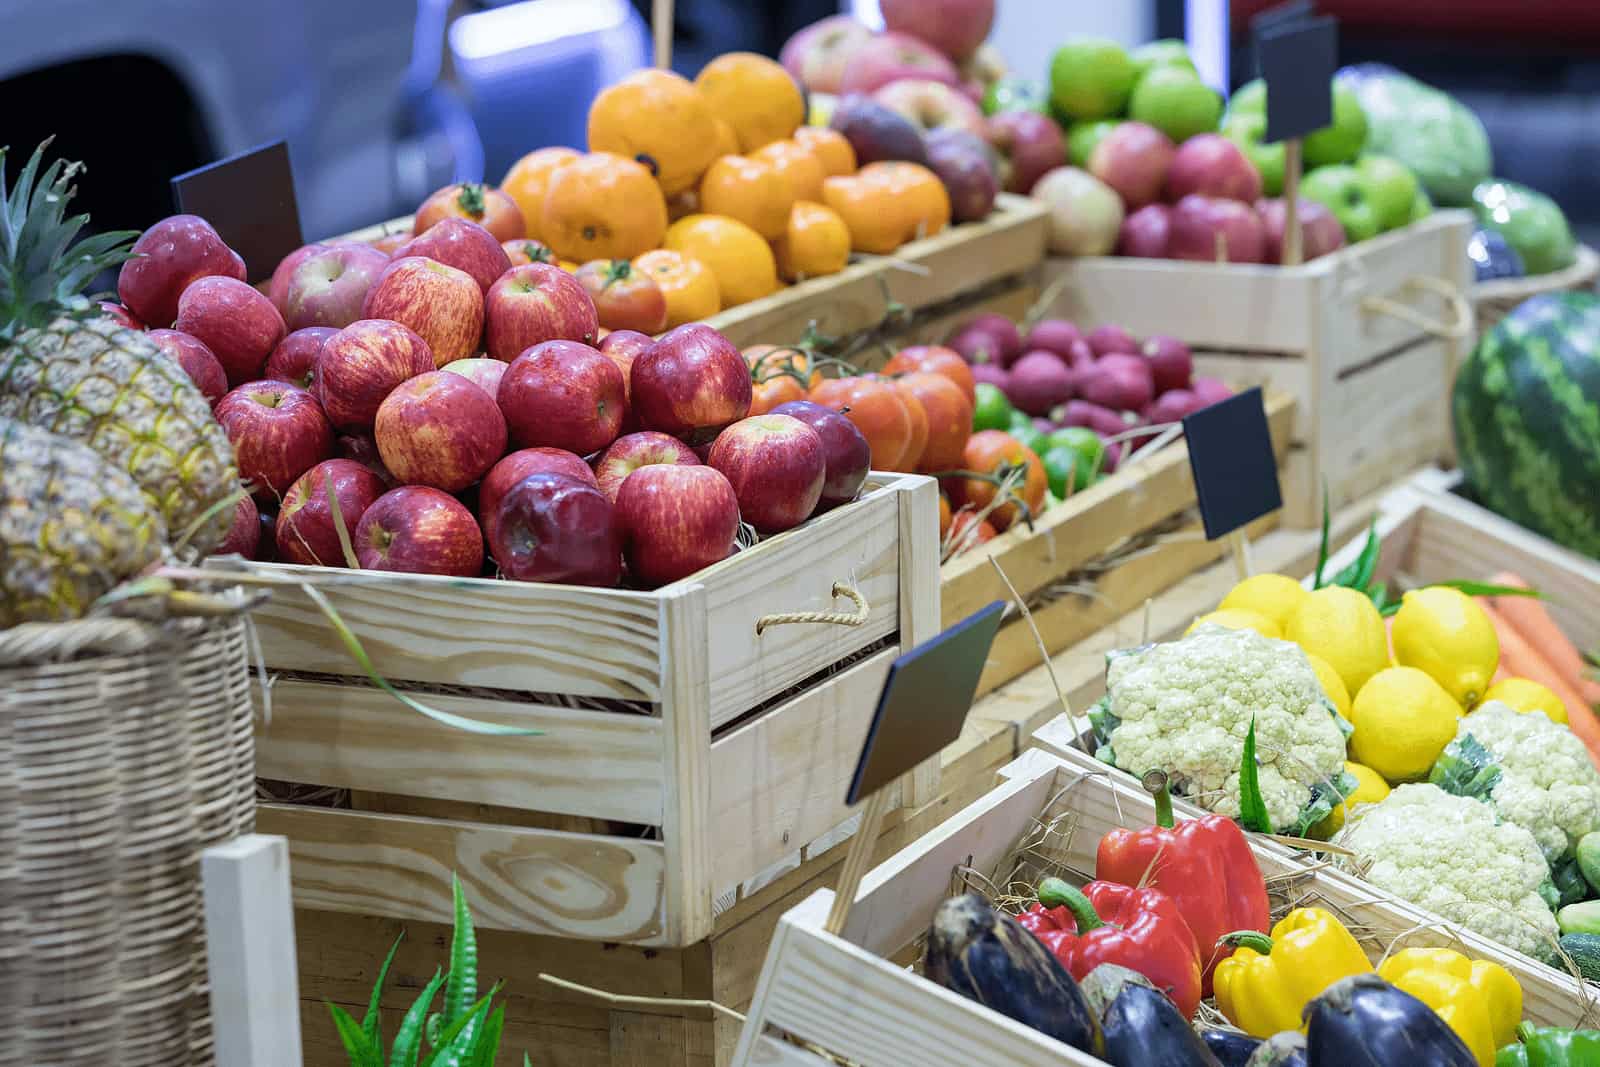 reduce waste - buy Fresh produce